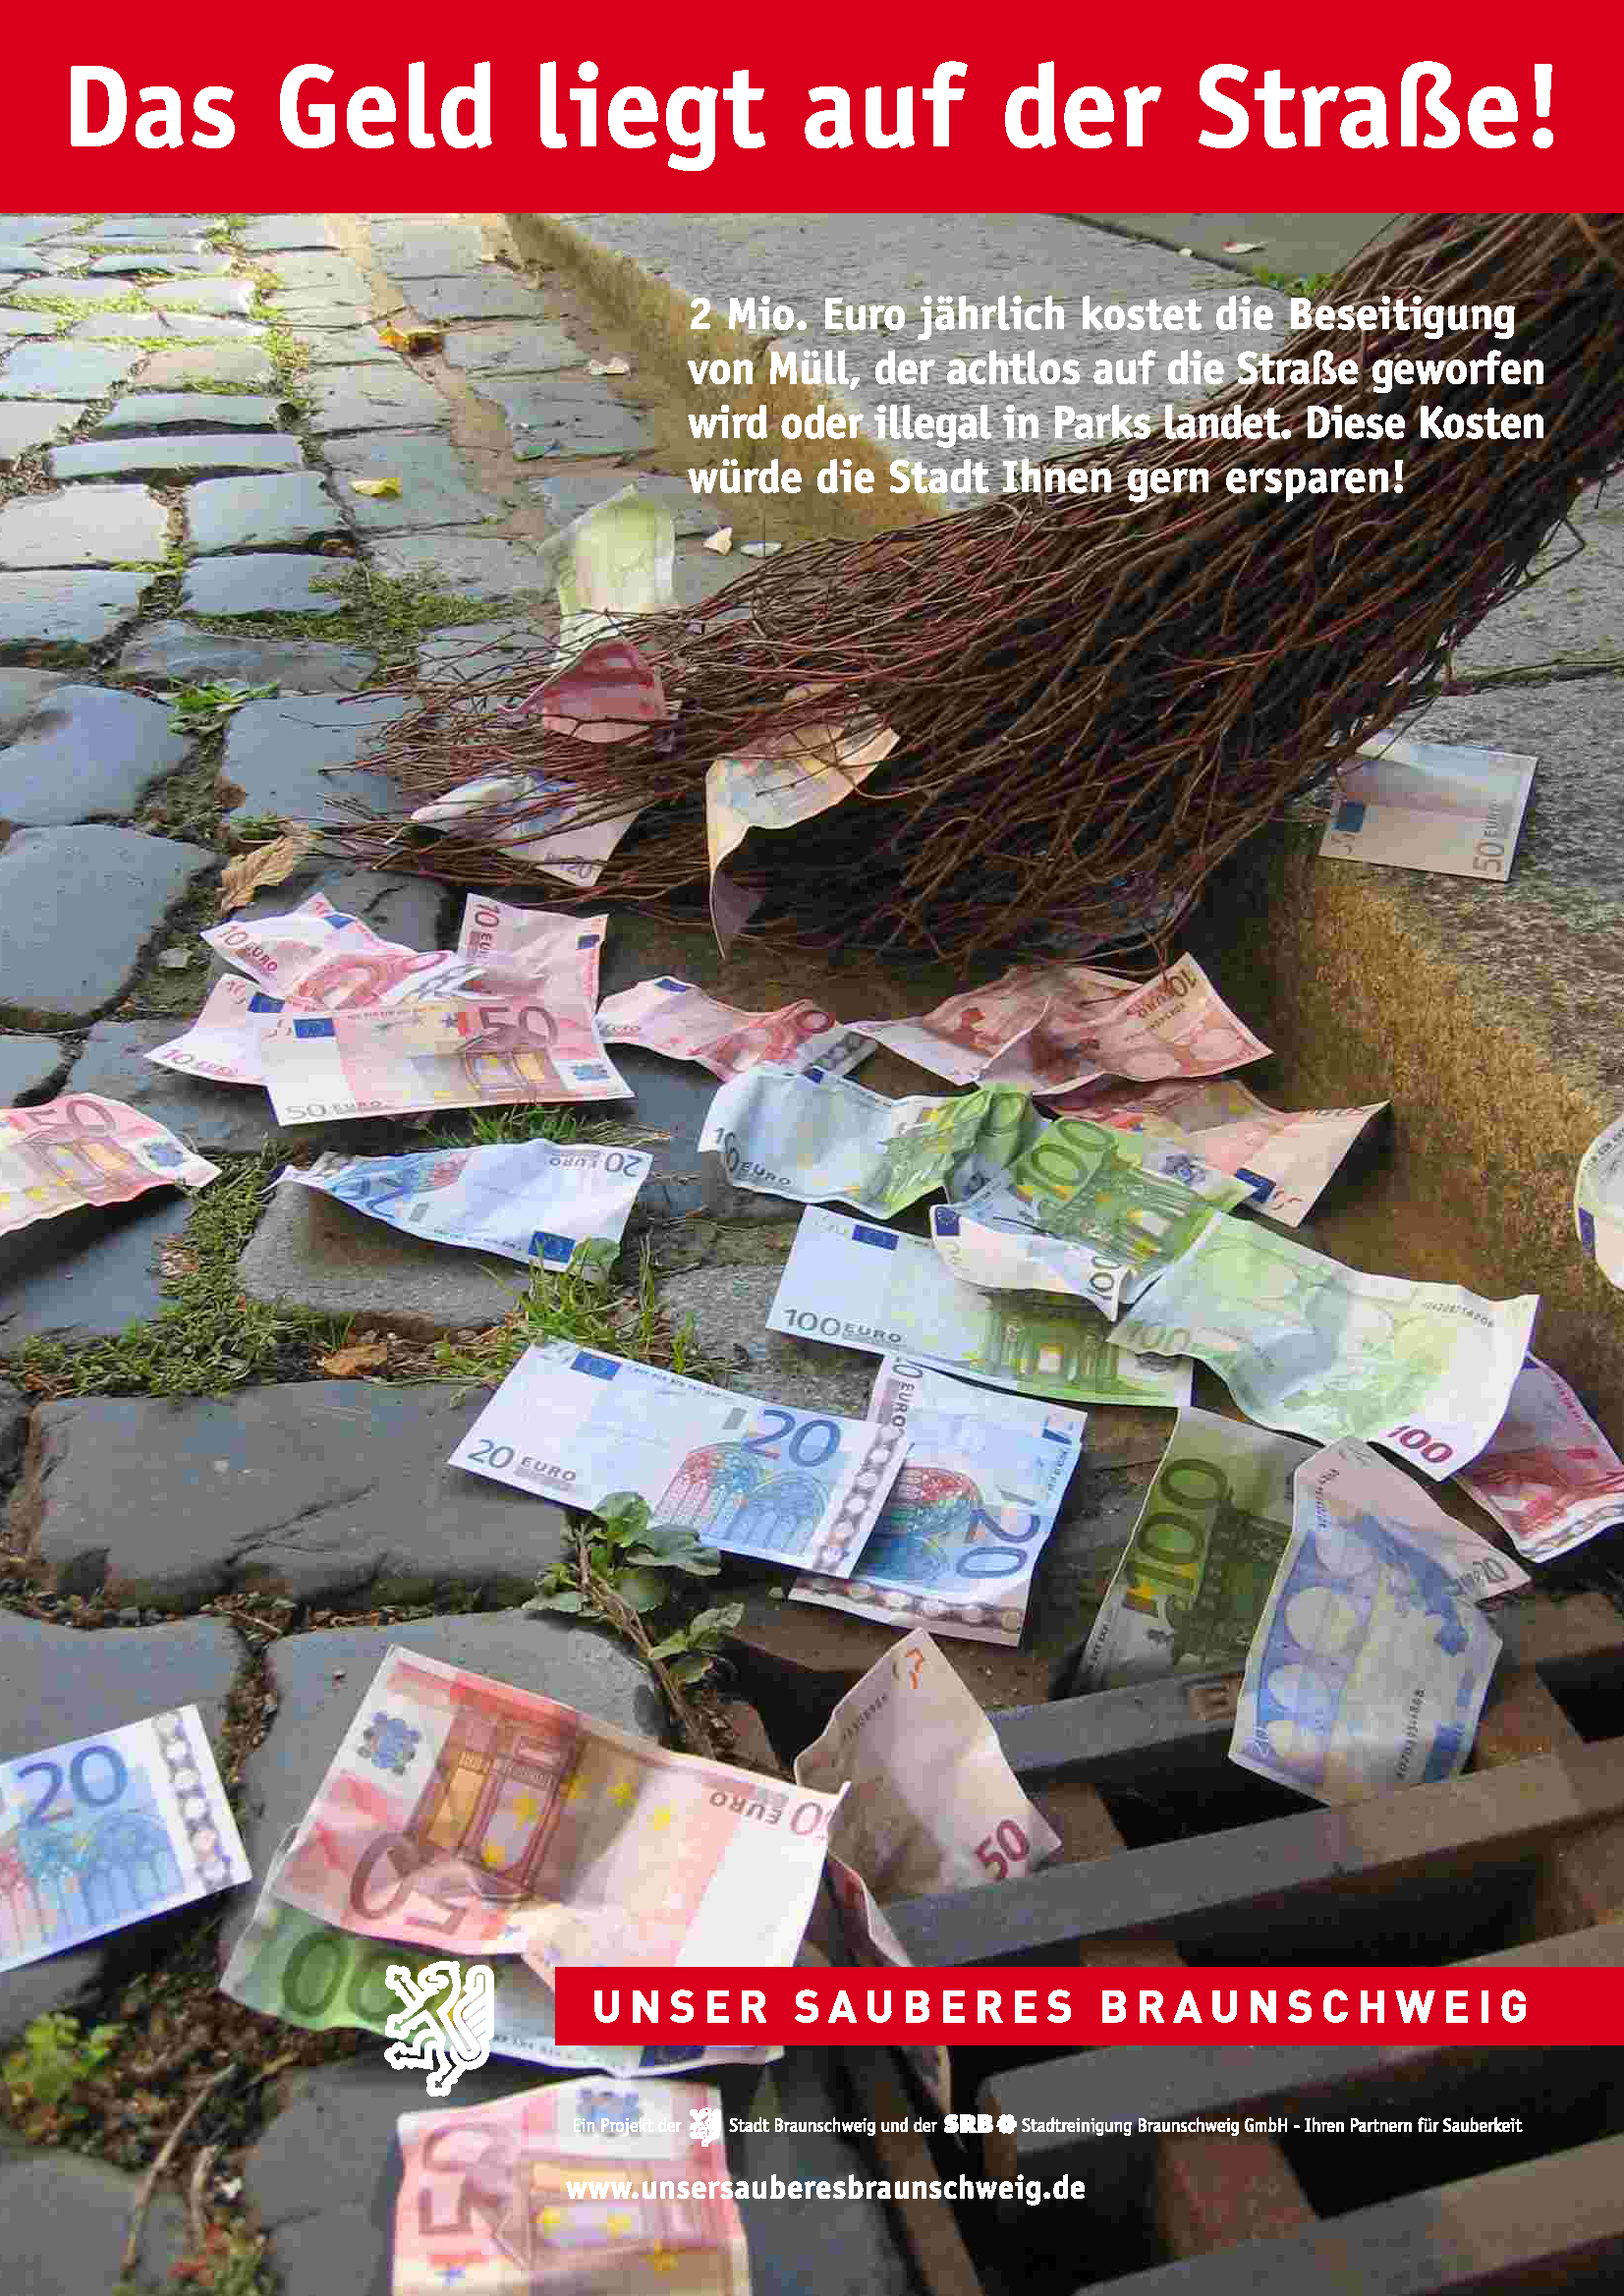 2.000.000 € kostet jährlich die Beseitigung von achtlos weggeworfenem Abfall in Braunschweig. Die Kosten tragen die Bürgerinnen und Bürger. (Wird bei Klick vergrößert)